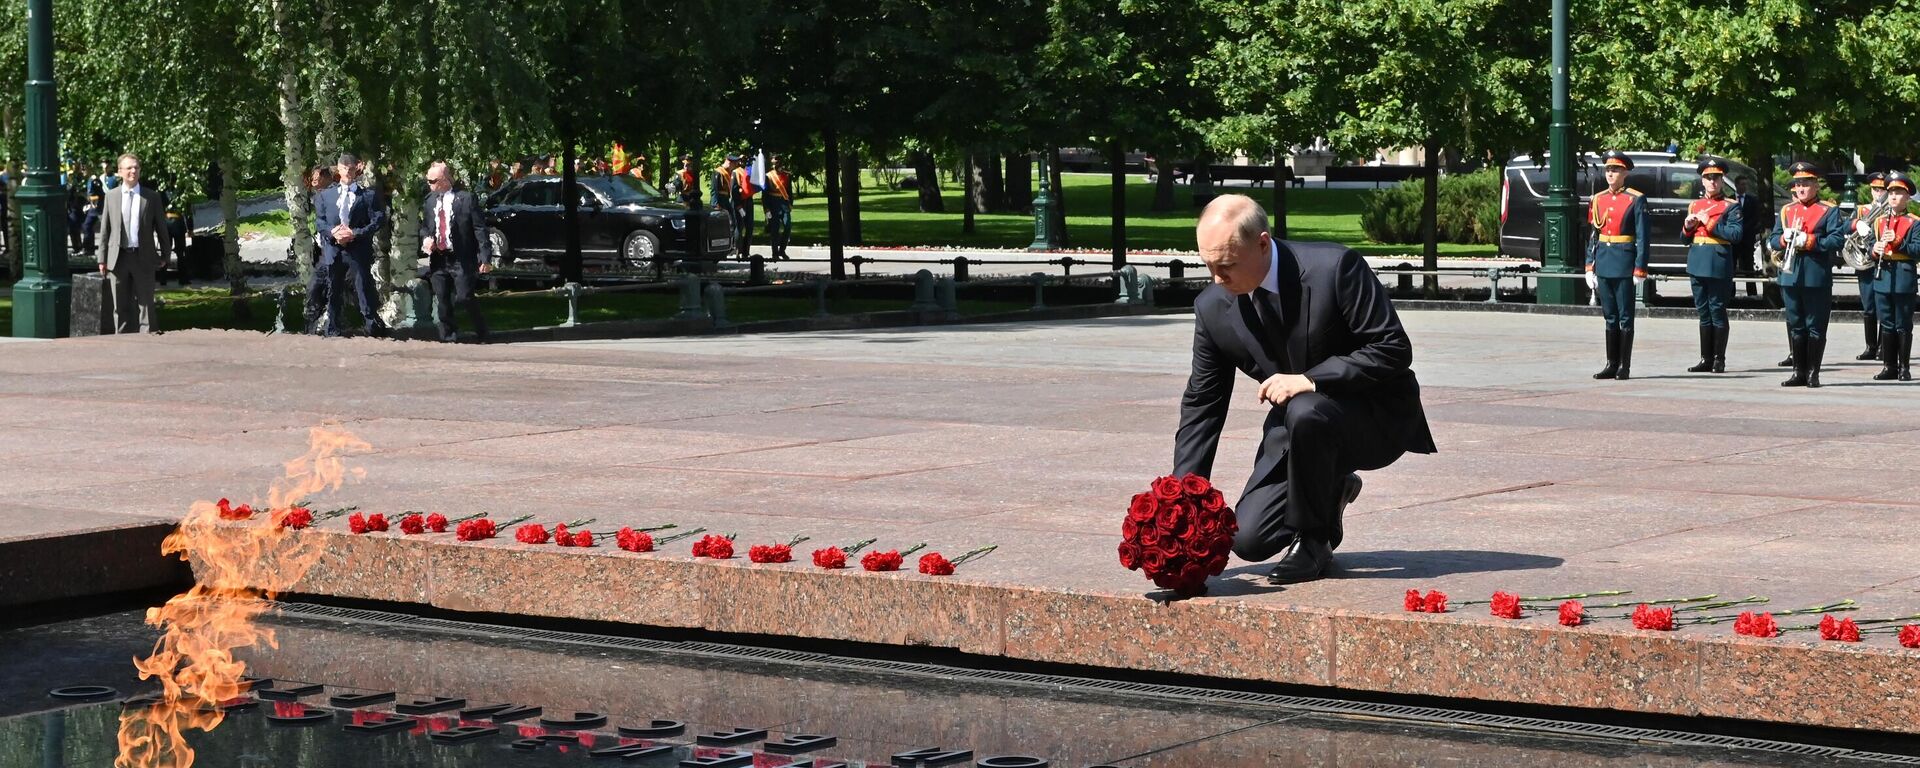 El presidente de Rusia, Vladímir Putin, deposita flores ante la Tumba del Soldado Desconocido - Sputnik Mundo, 1920, 22.06.2021